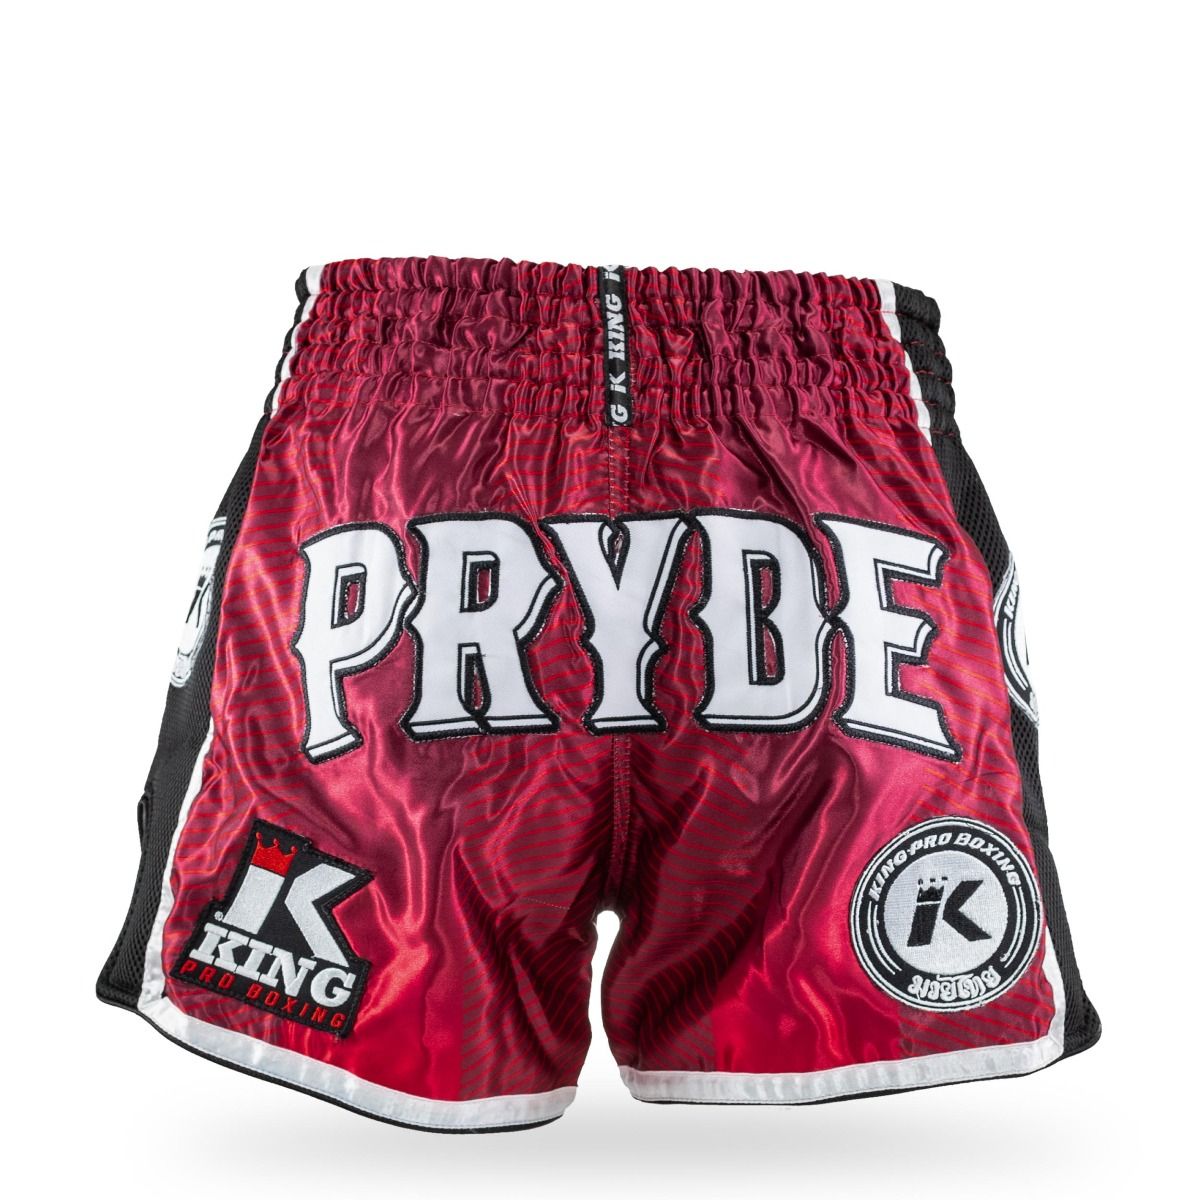 King Pro Boxing-Fightshort-Kickboksbroek-PRYDE 1-Rood-Groen-Zwart